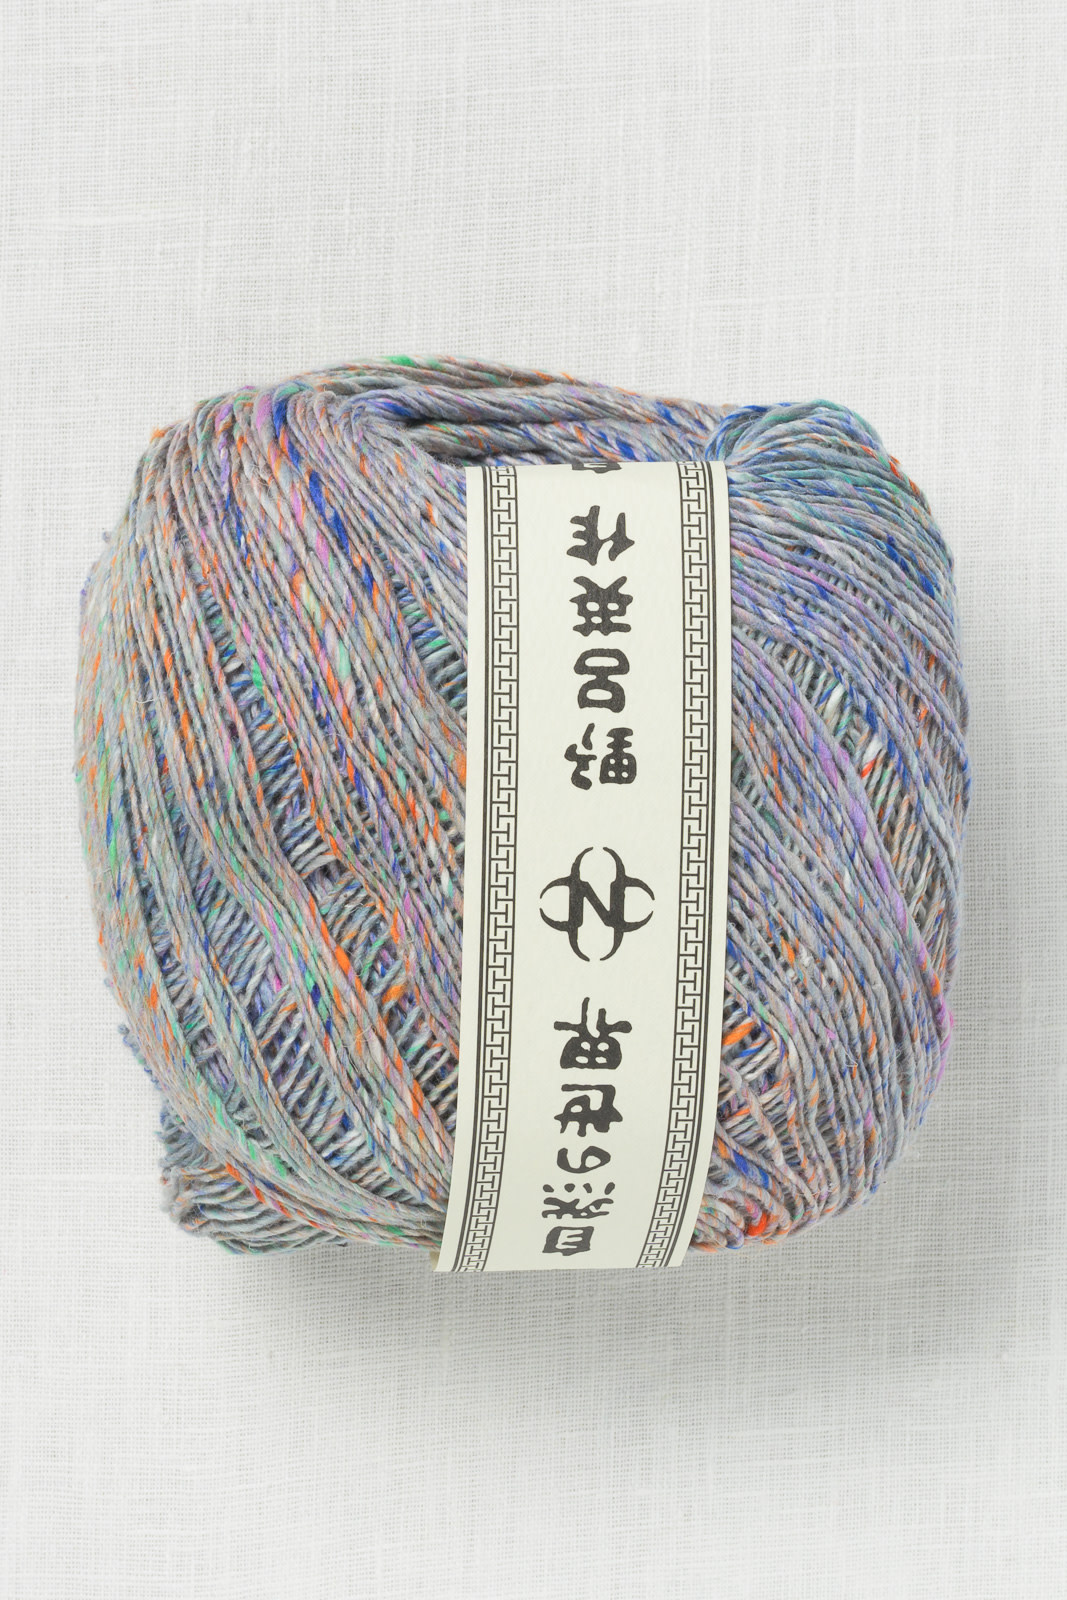 Noro Kakigori 29 Neyagawa - Wool and Company Fine Yarn